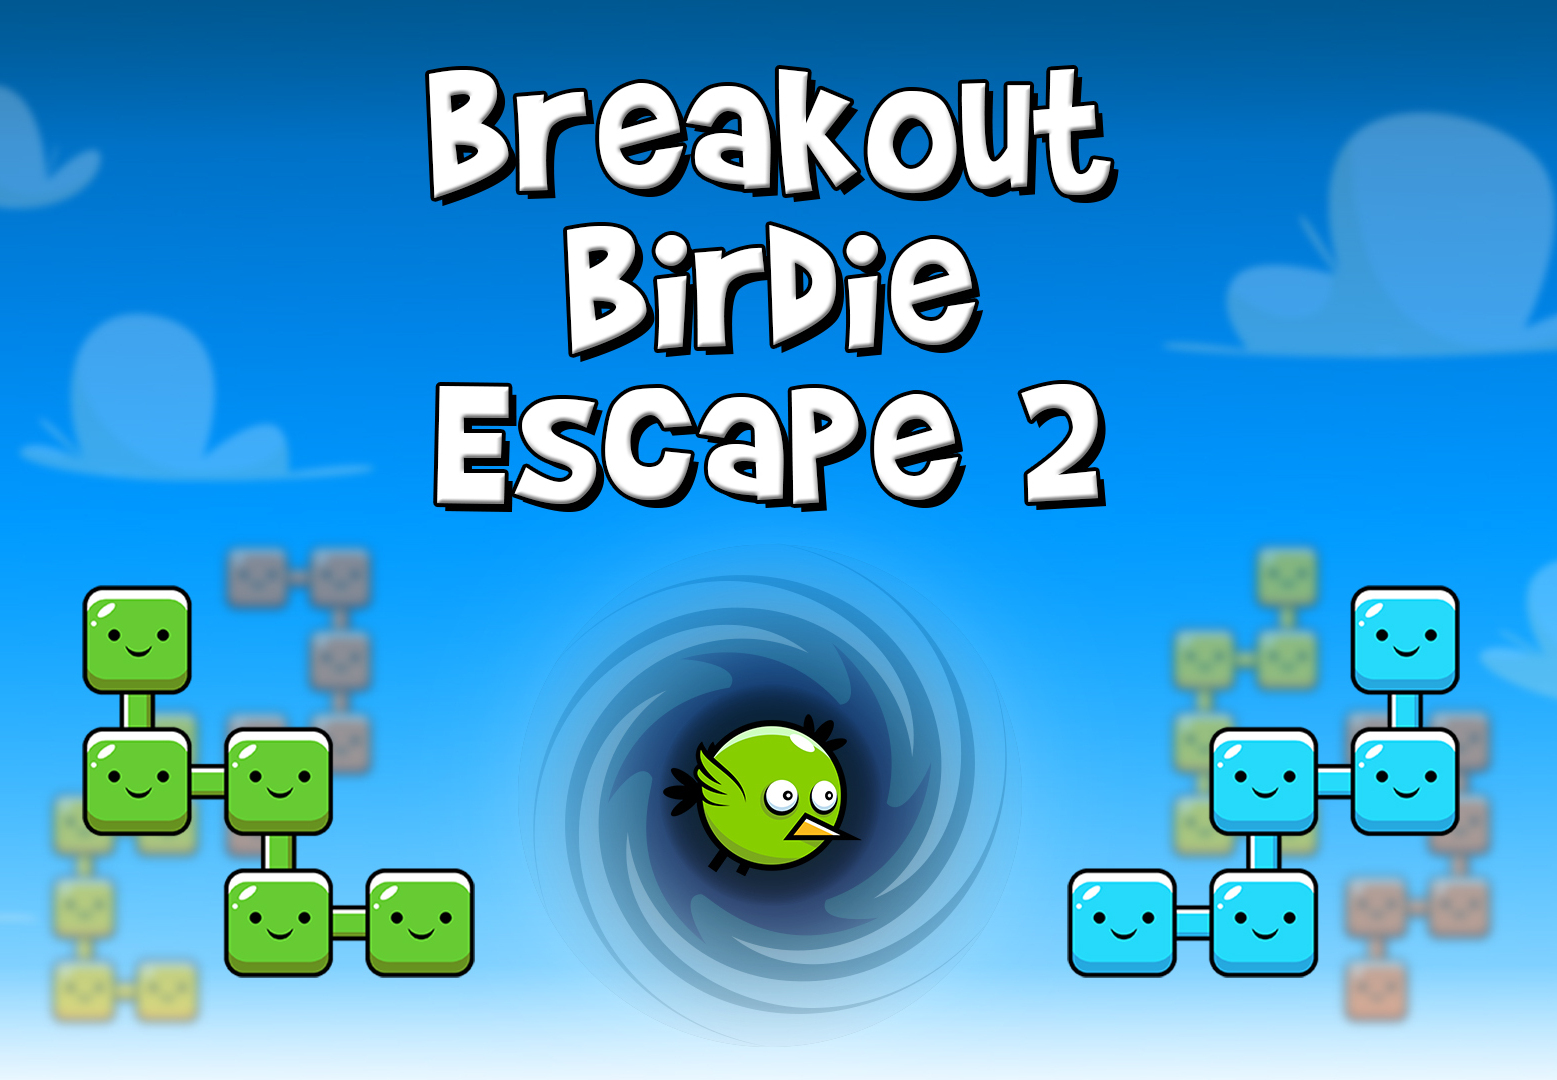 Breakout Birdie Escape 2 EU Nintendo Switch CD Key